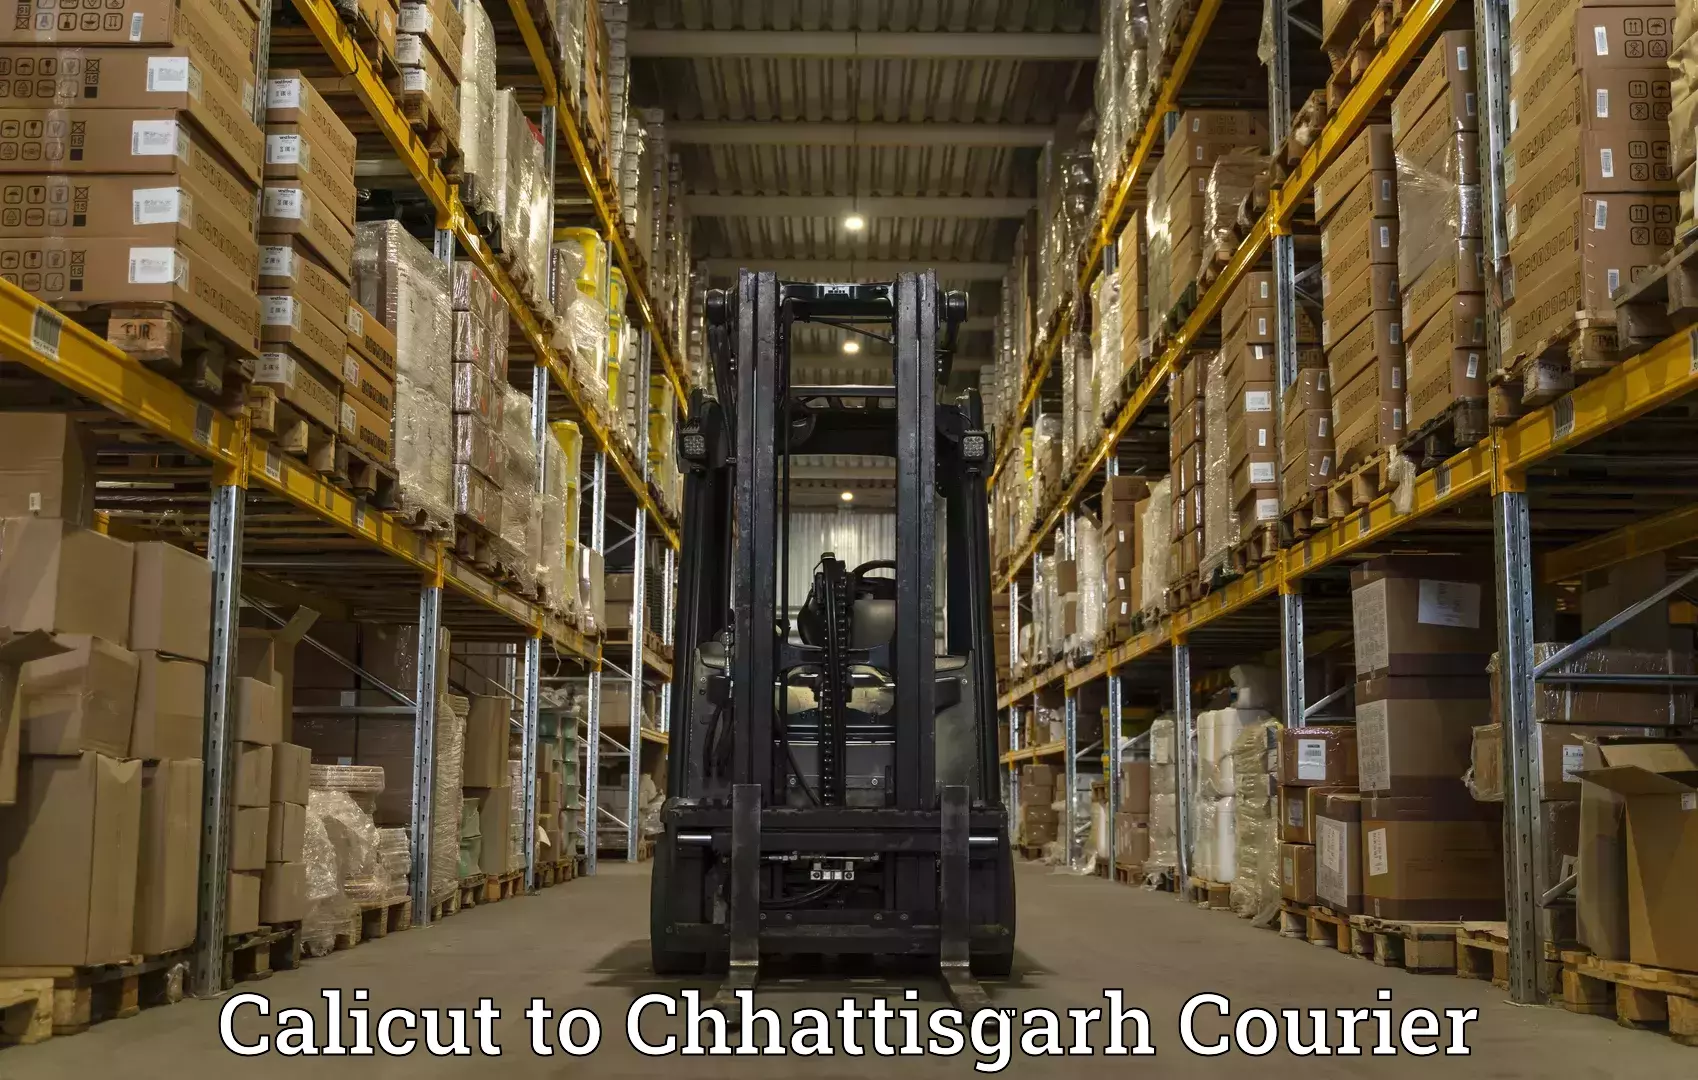 Courier service comparison Calicut to Chhattisgarh